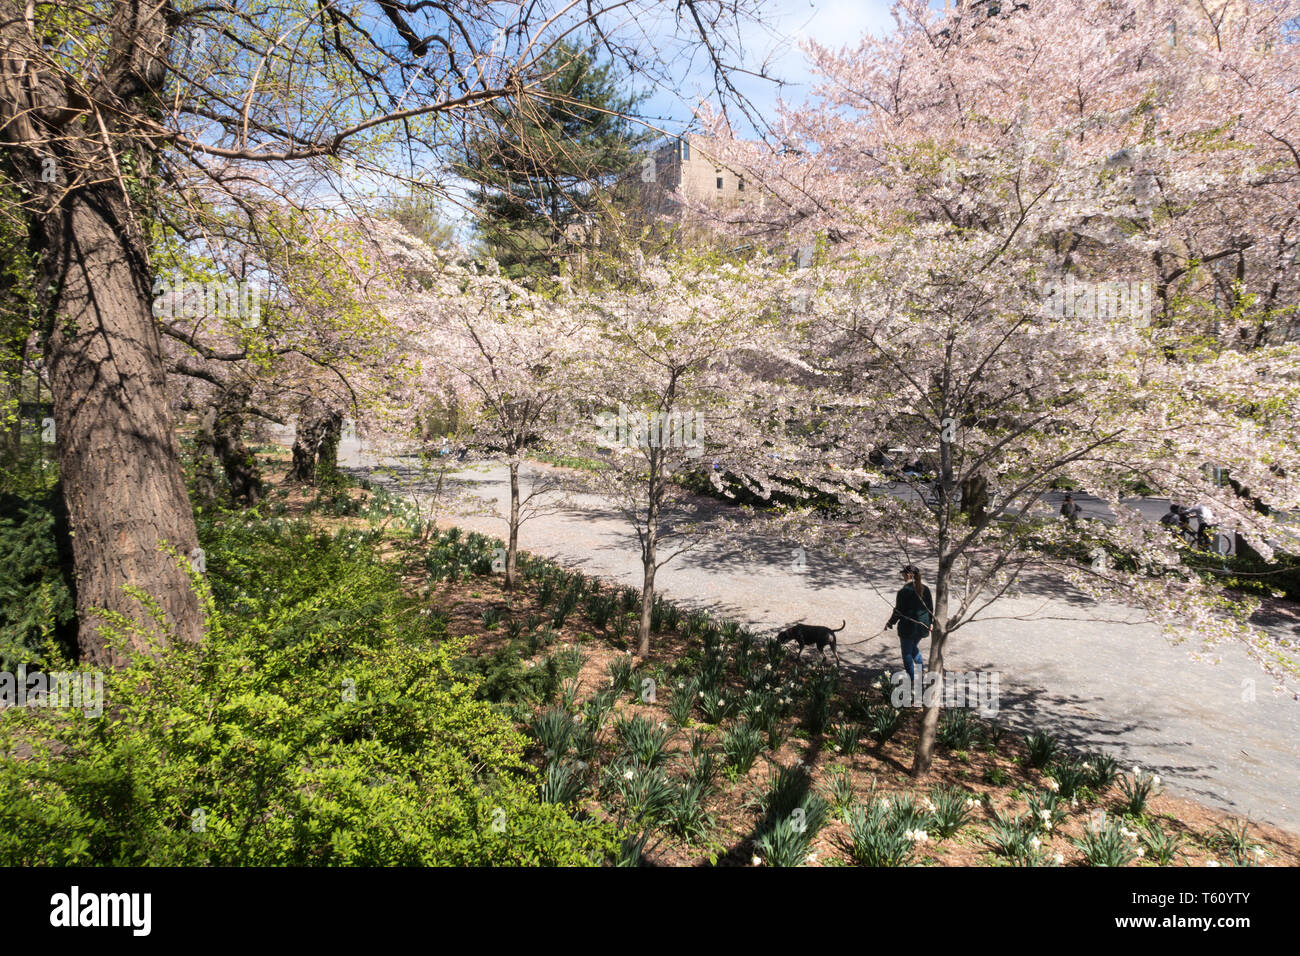 Les personnes bénéficiant d'une journée de printemps sur l'allée cavalière dans Central Park, NYC, USA Banque D'Images